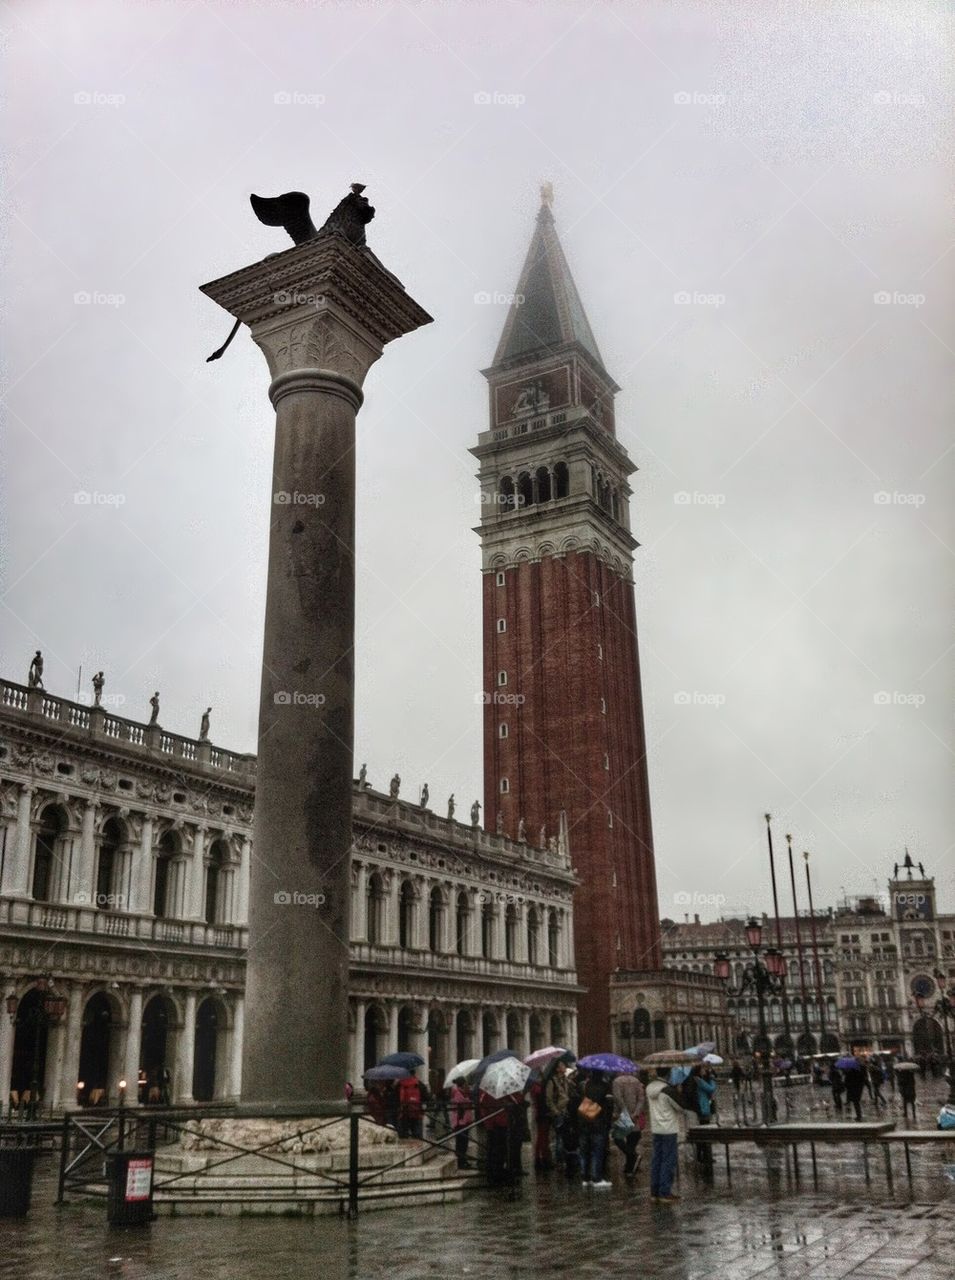 Rainy day in Venice